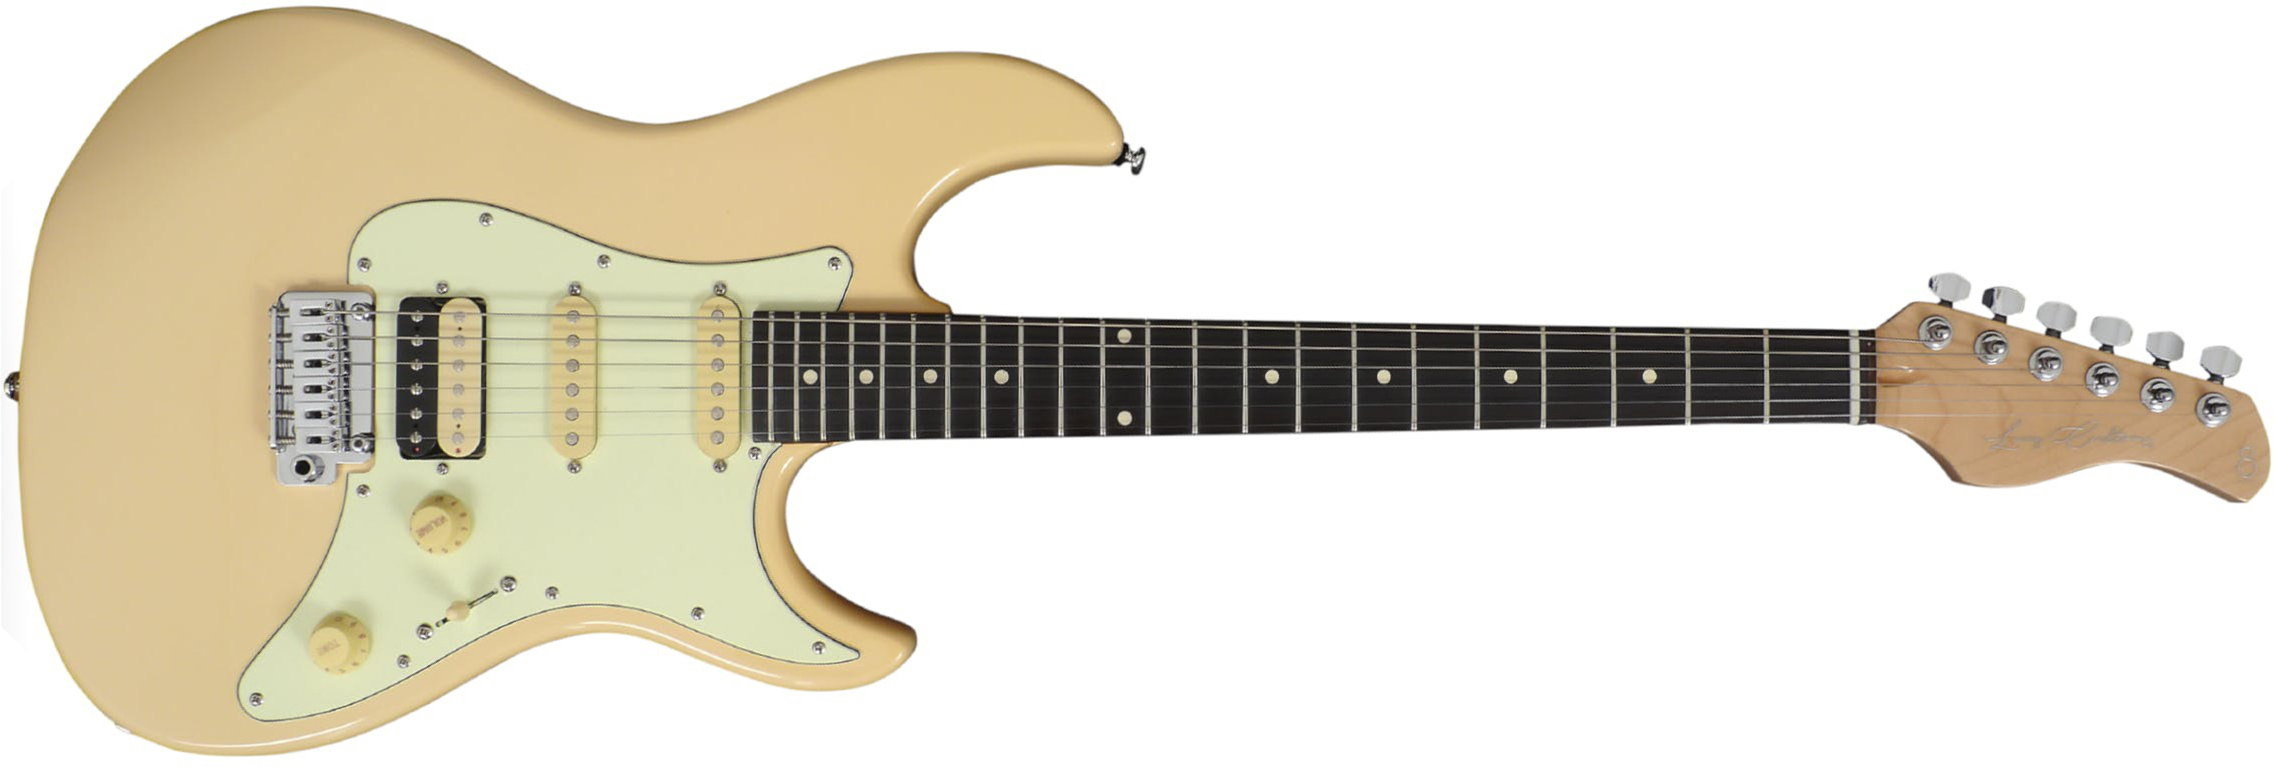 Sire Larry Carlton S3 Signature Hss Trem Rw - Vintage White - Str shape electric guitar - Main picture